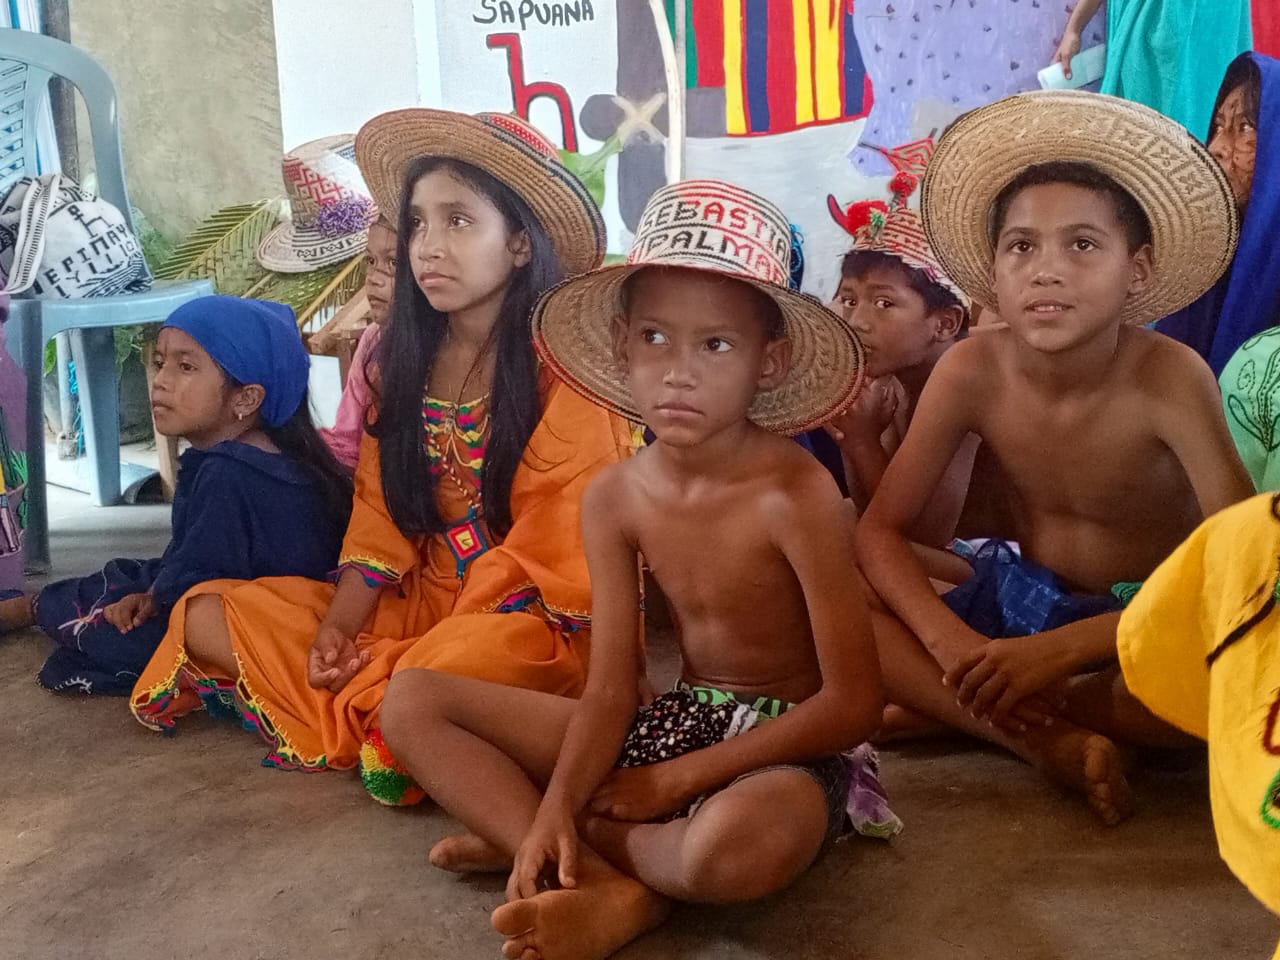 Inidi Zulia celebró el Día del niño y niña indígena con actividades culturales